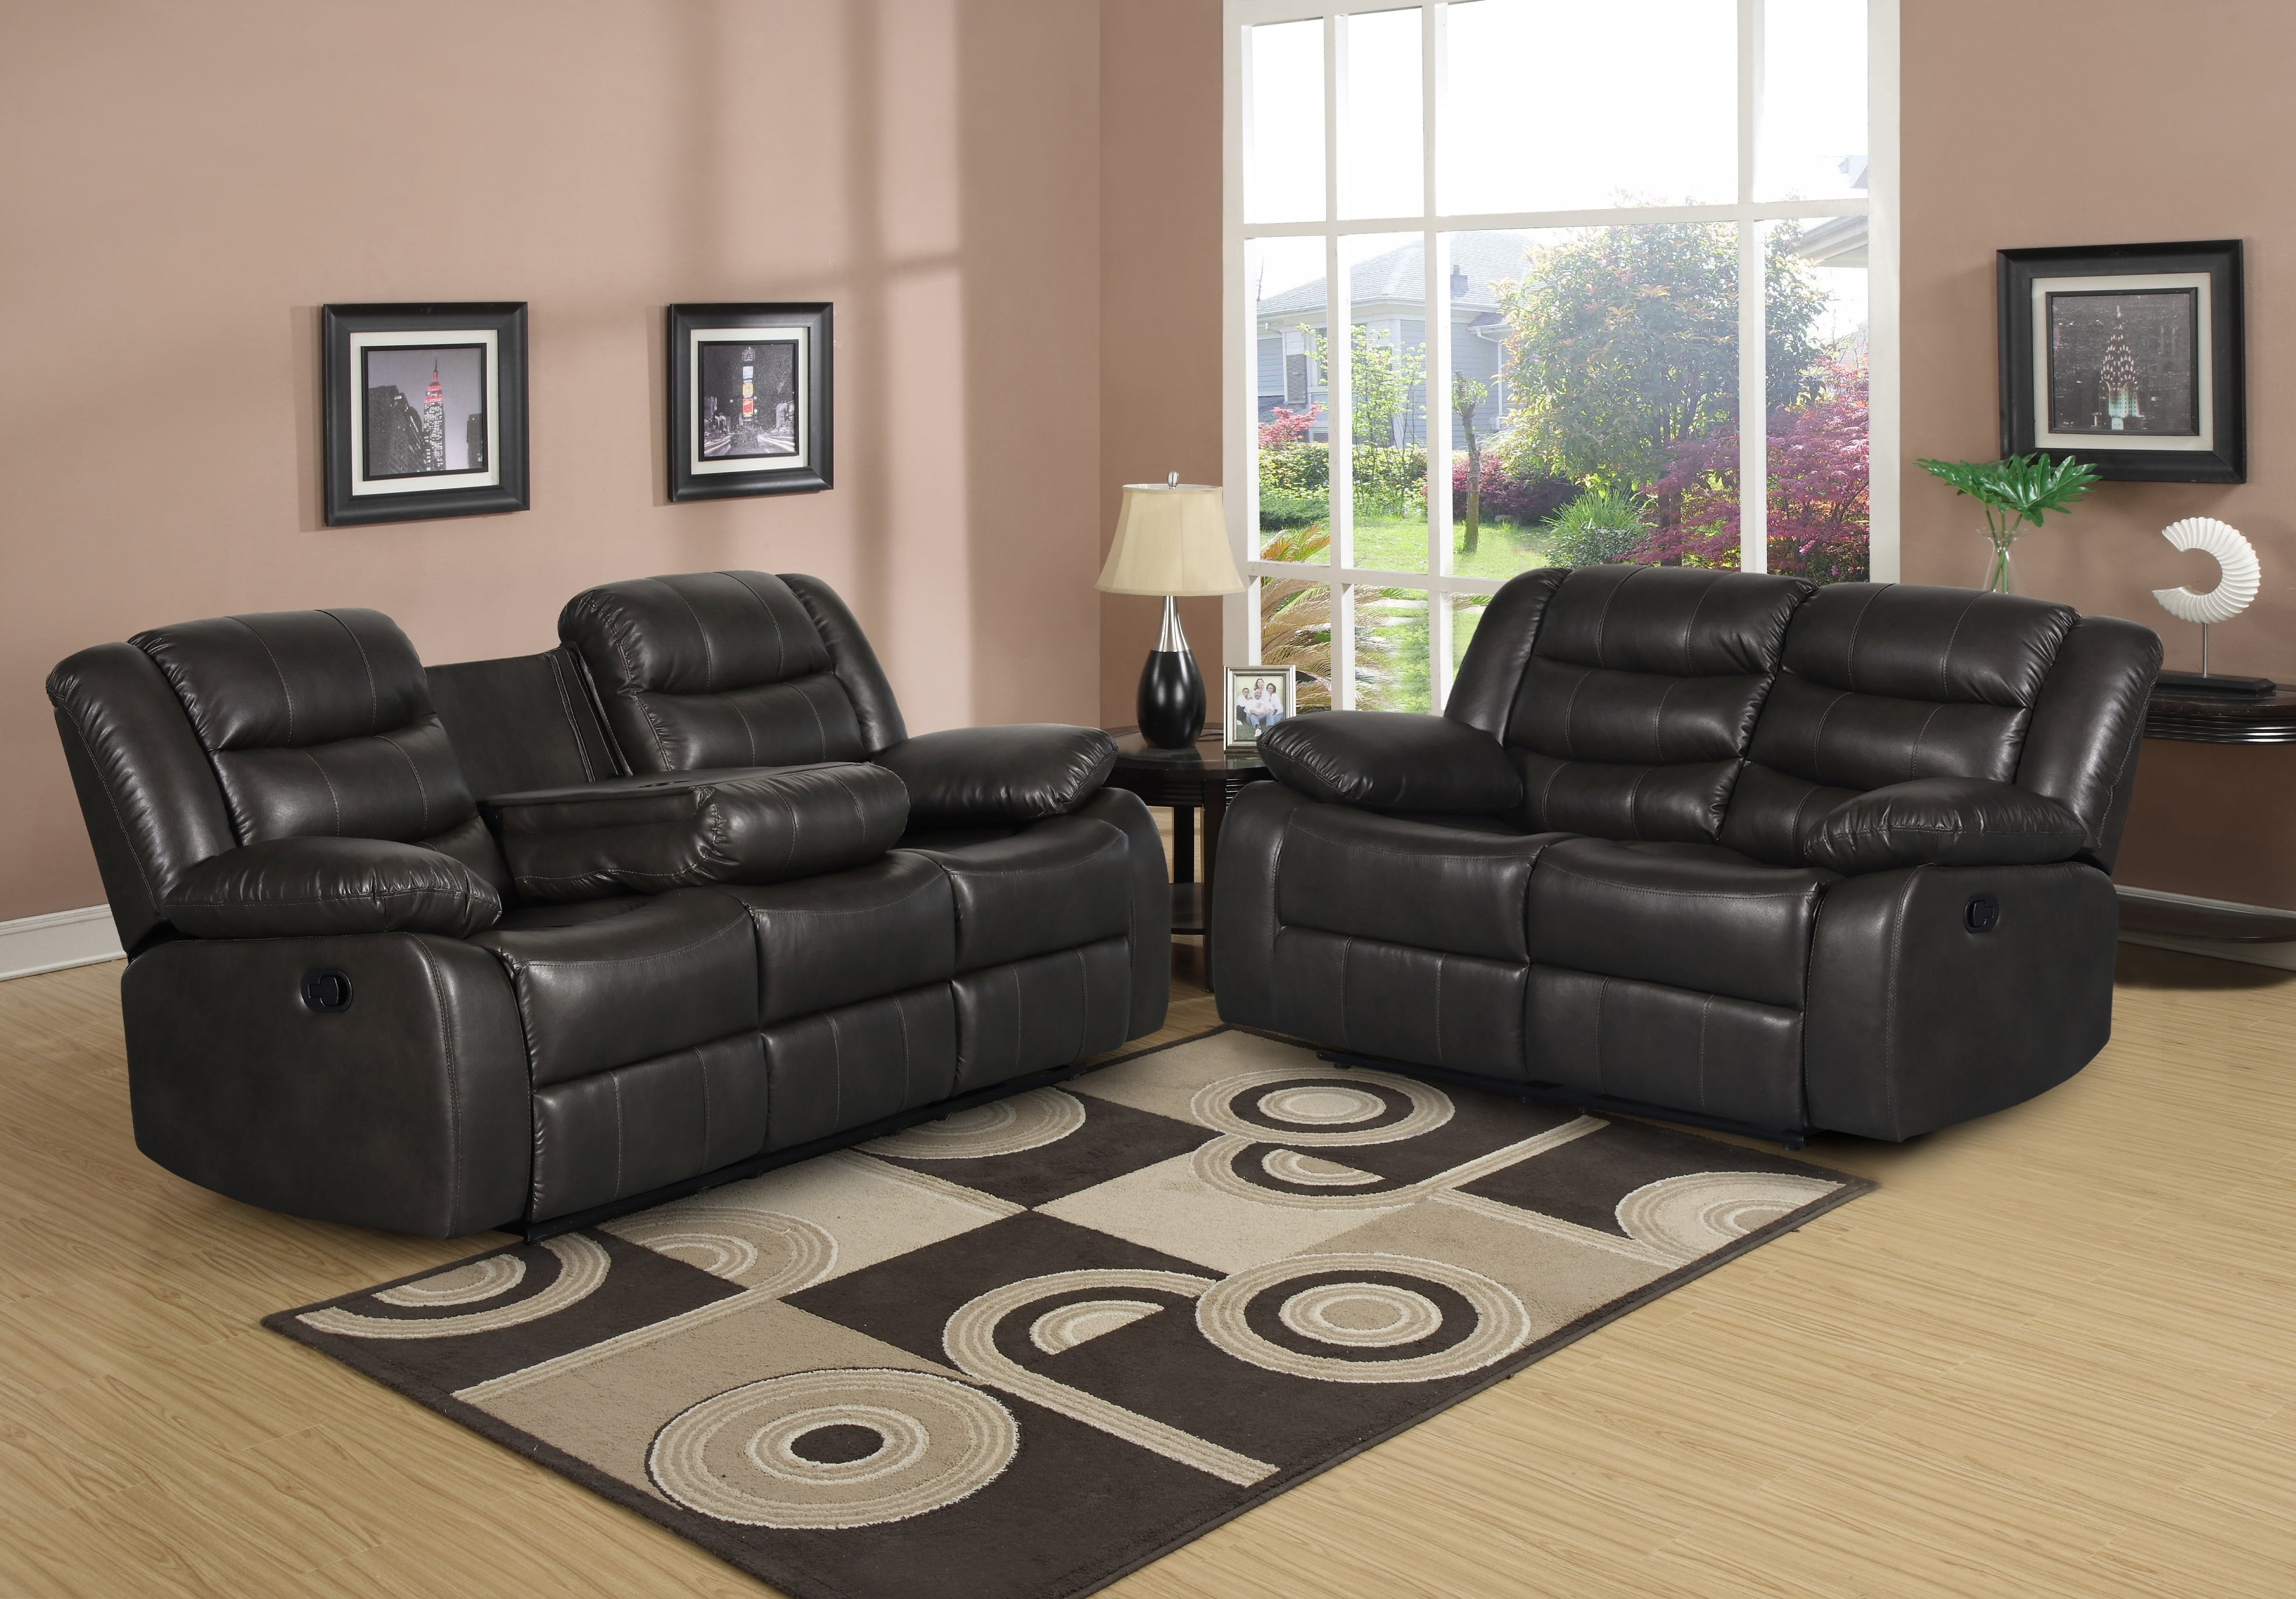 2 piece living room furniture set